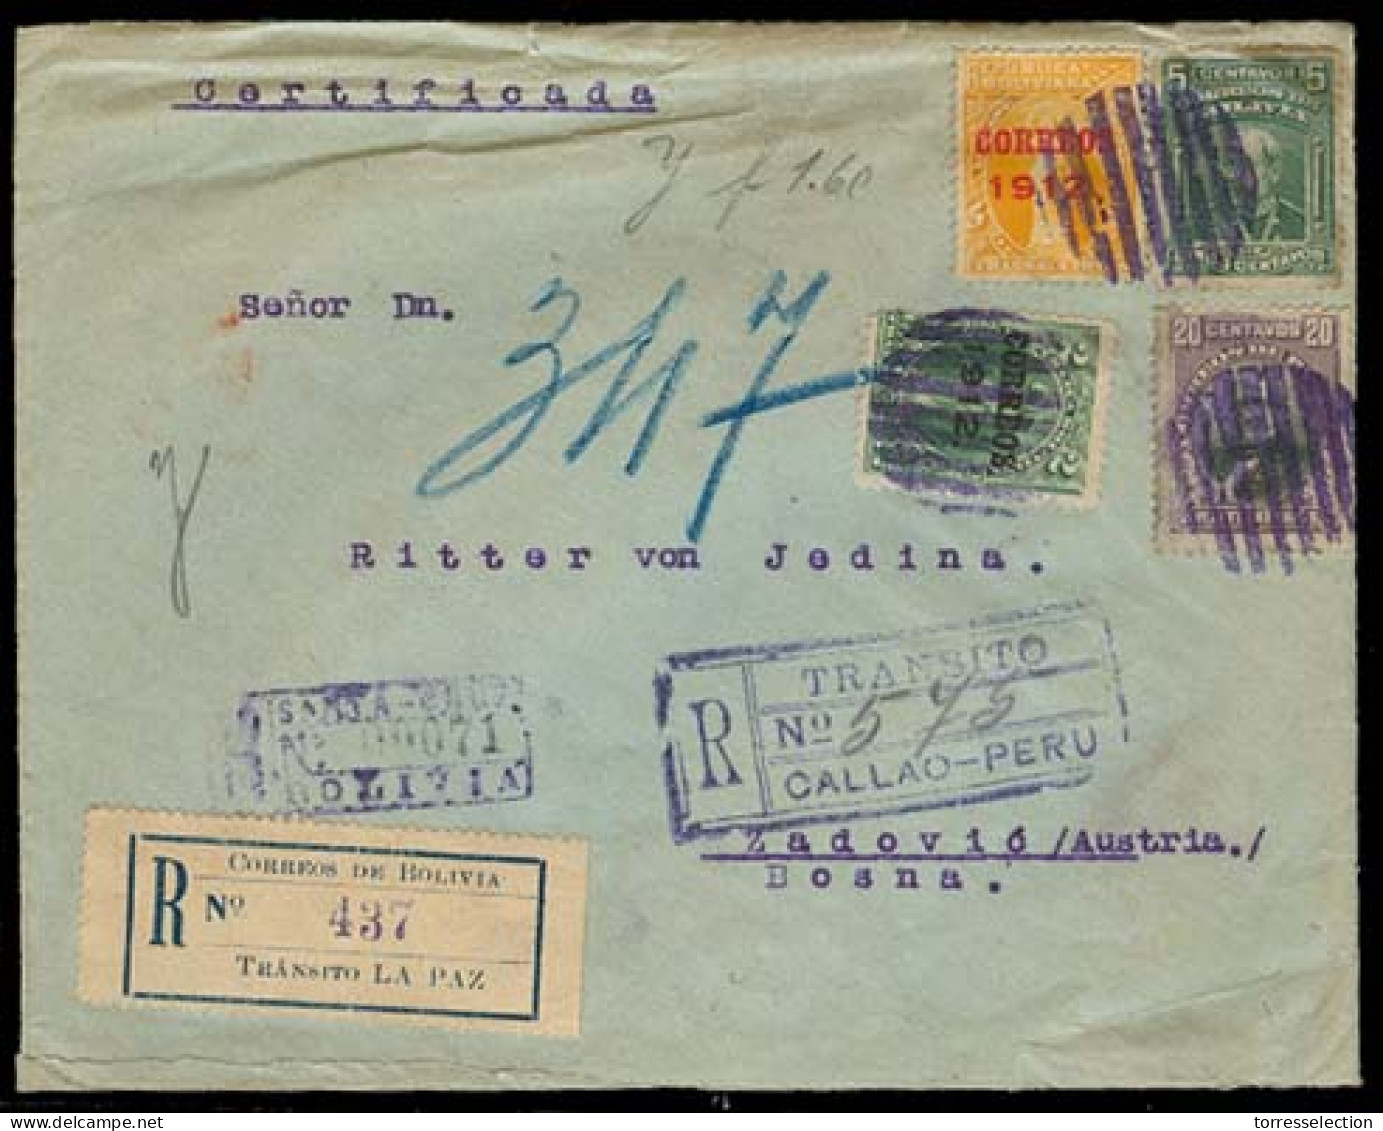 BOLIVIA. 1914. Santa Cruz - Bosnia / Zadovic.  Registered Multicolor Env. Via La Paz - Peru/Callao. V Rare Dest Mail. - Bolivie